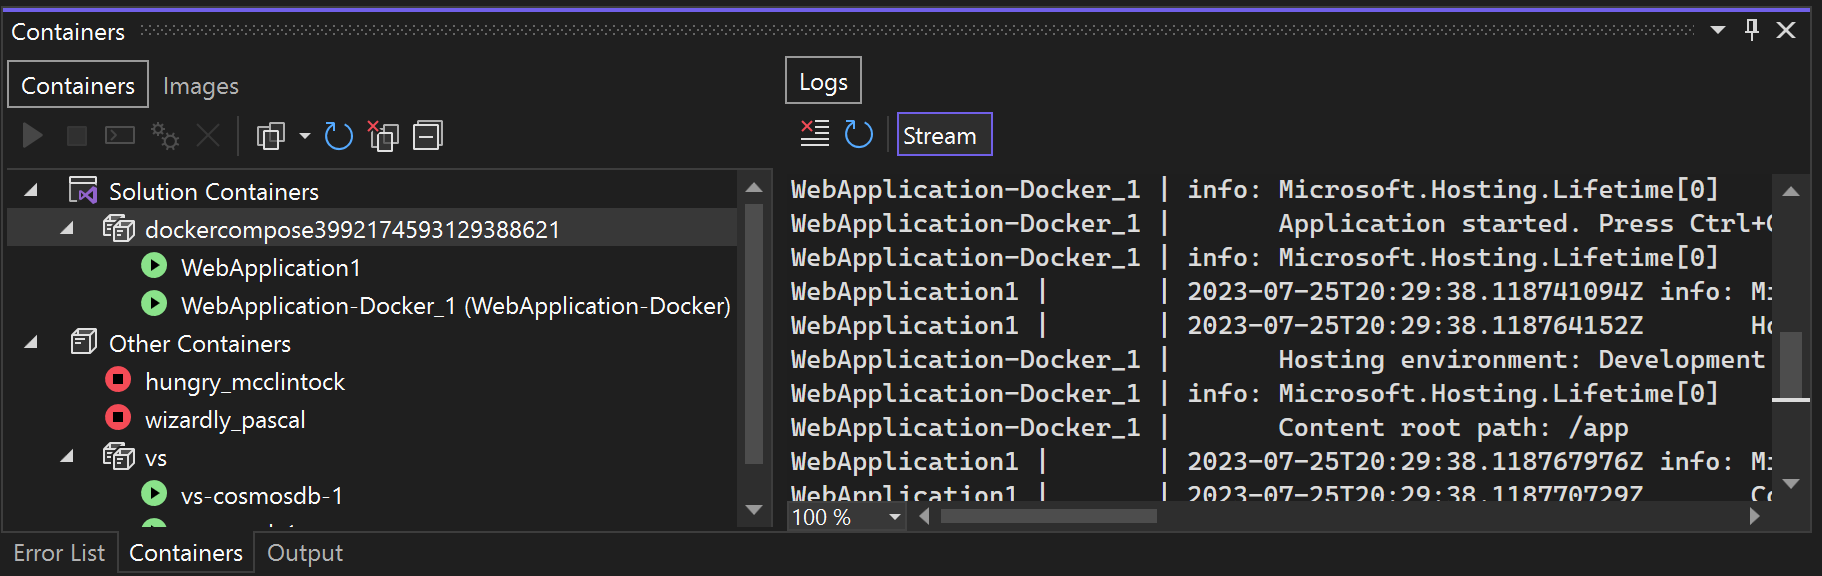 屏幕截图显示了“容器”窗口中的 Docker Compose 节点。